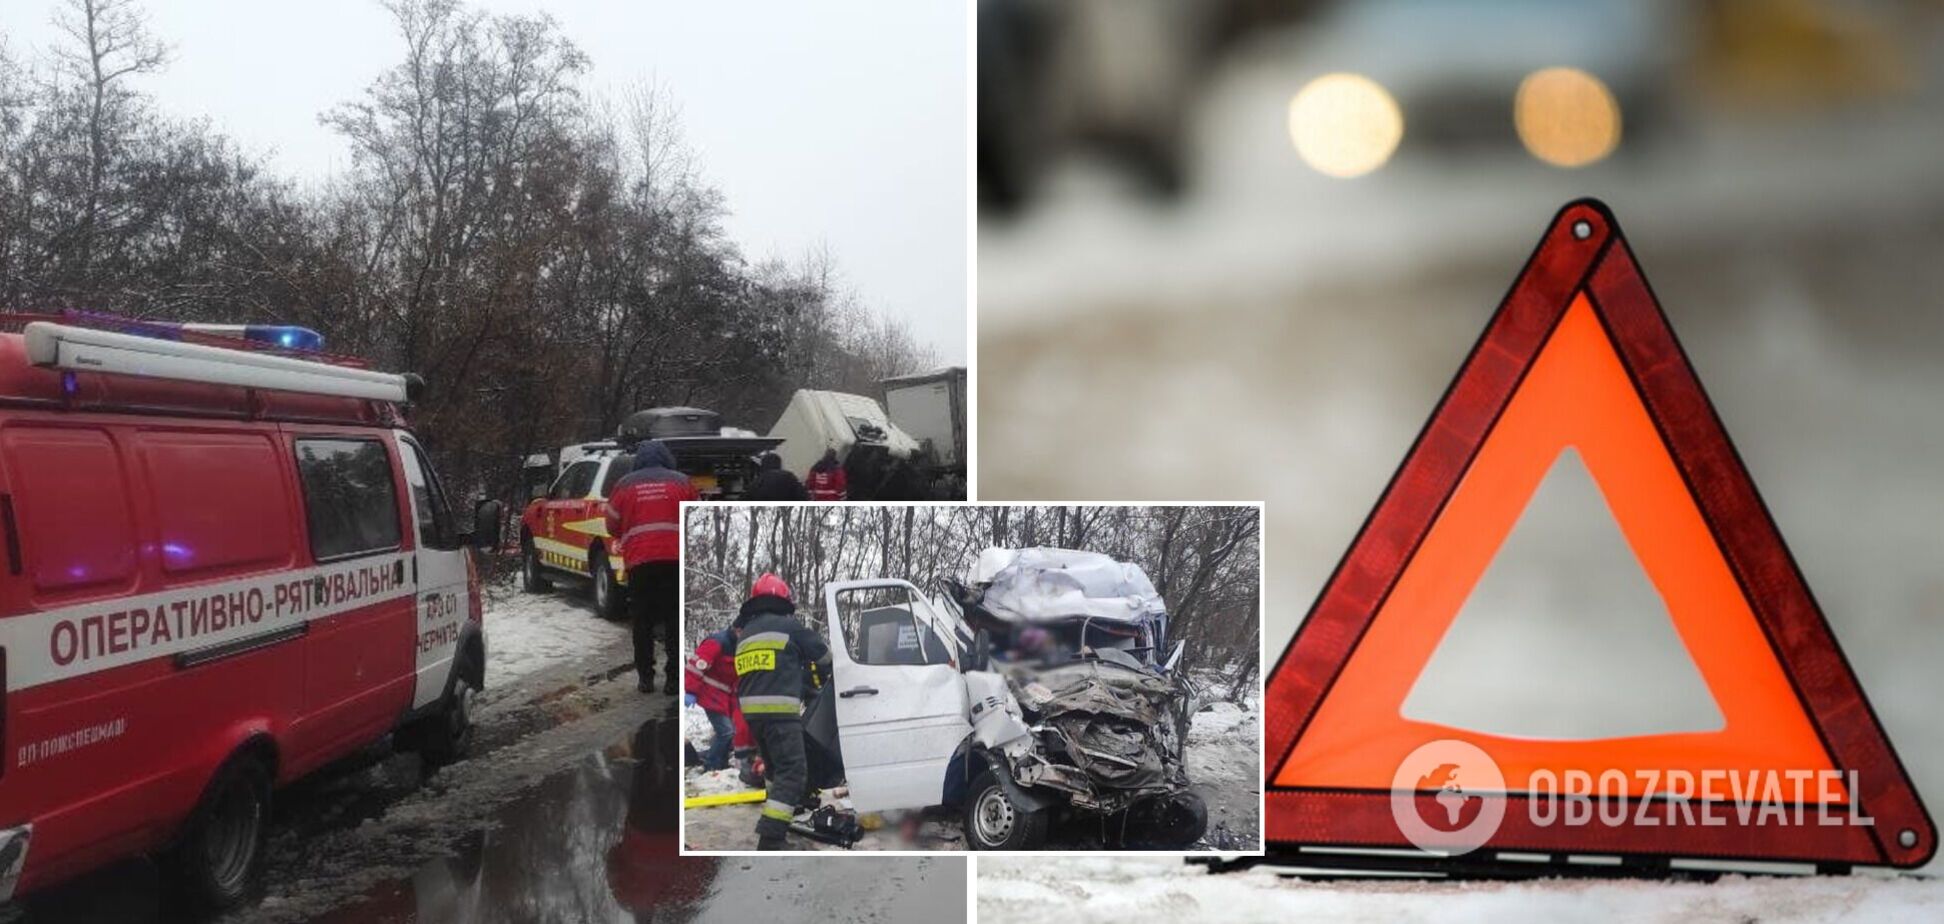 У Чернігівській області зіткнулися вантажівка та маршрутка, загинуло 13 людей. Фото і всі подробиці